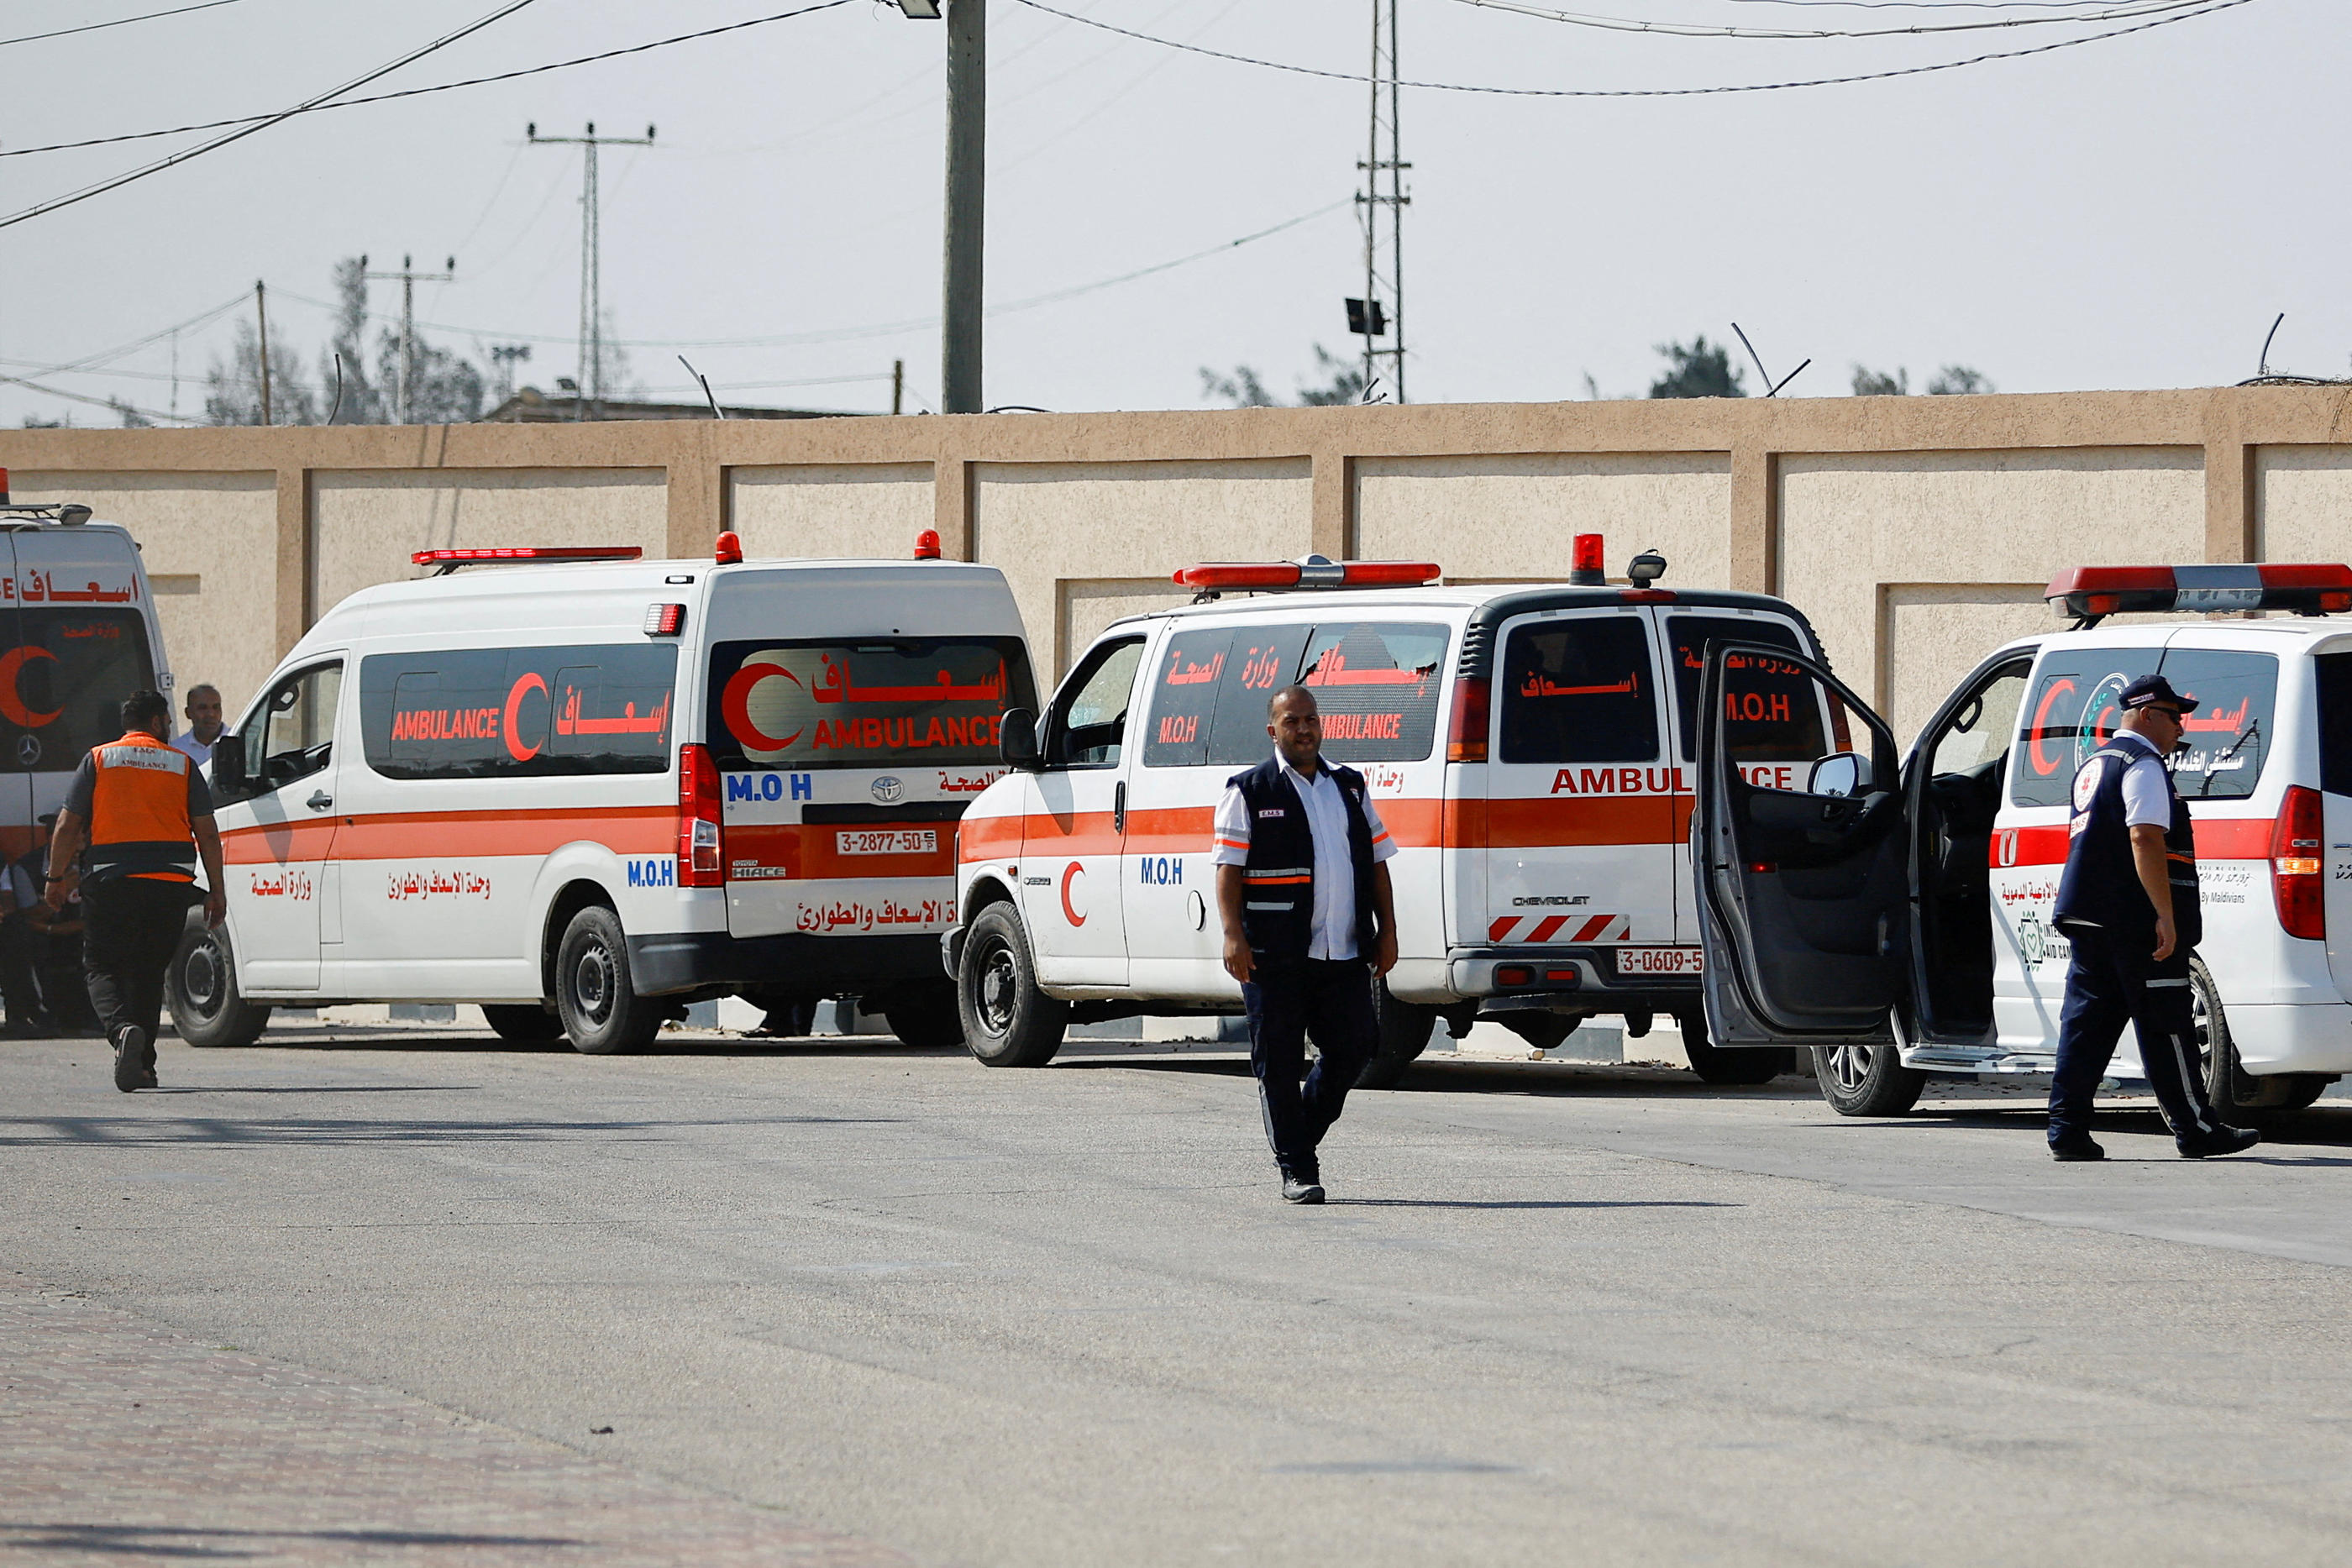 L'Egypte a annoncé que le poste-frontière resterait ouvert jeudi pour permettre l'évacuation de nouveaux blessés et étrangers. REUTERS/Ibraheem Abu Mustafa